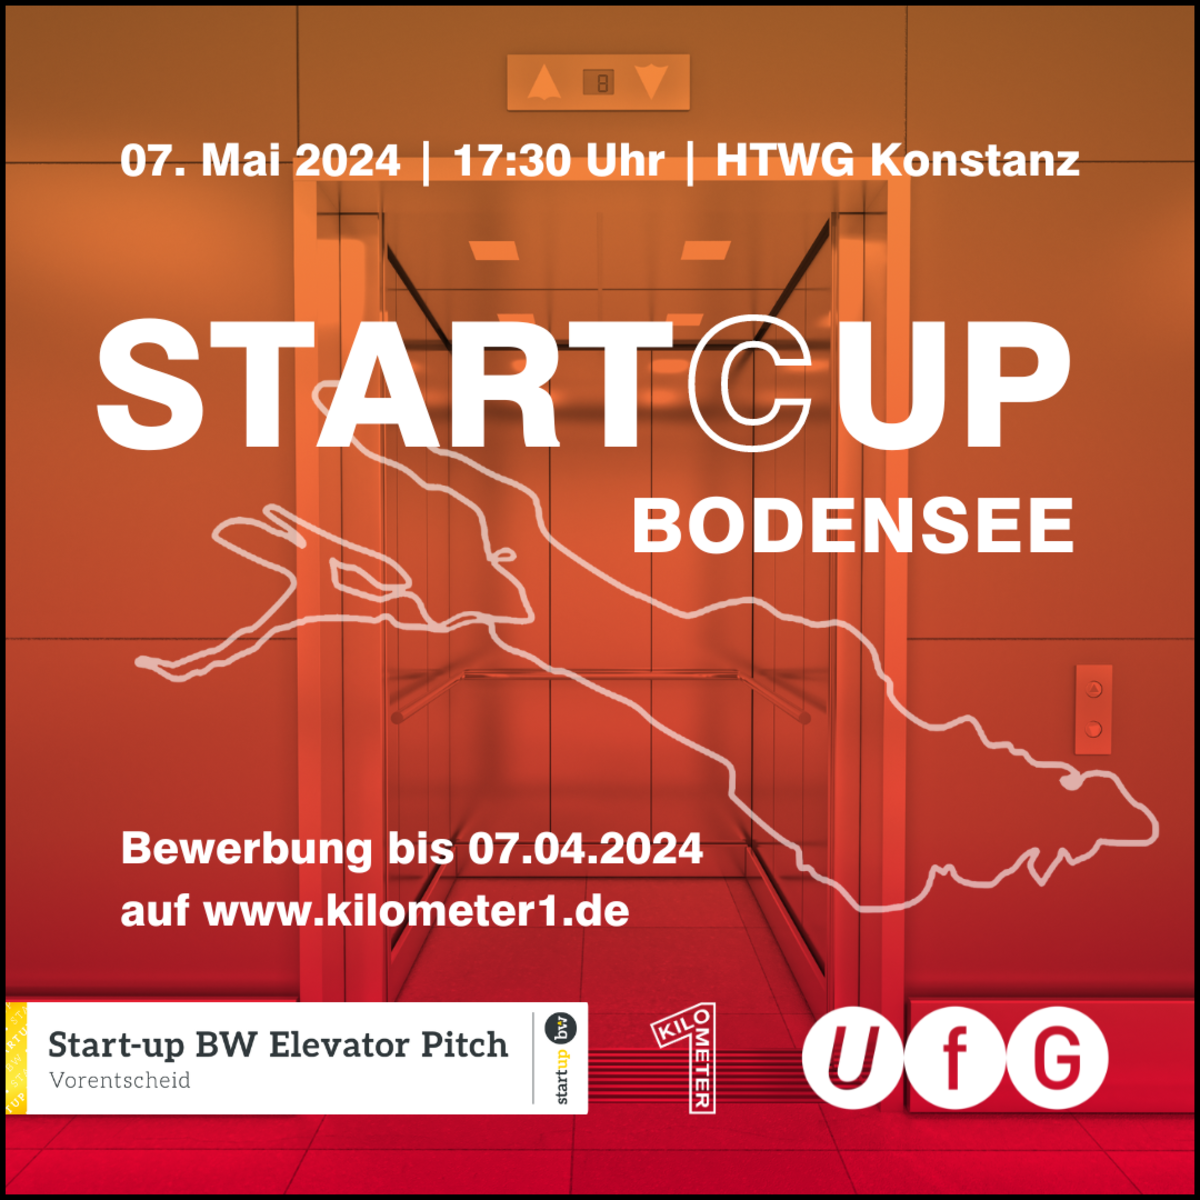 Veranstaltungshinweis START(C)UP Bodensee am 07.05.2024. Der Wettbewerb ist ein Vorentscheid für den Start-up BW Elevator Pitch.